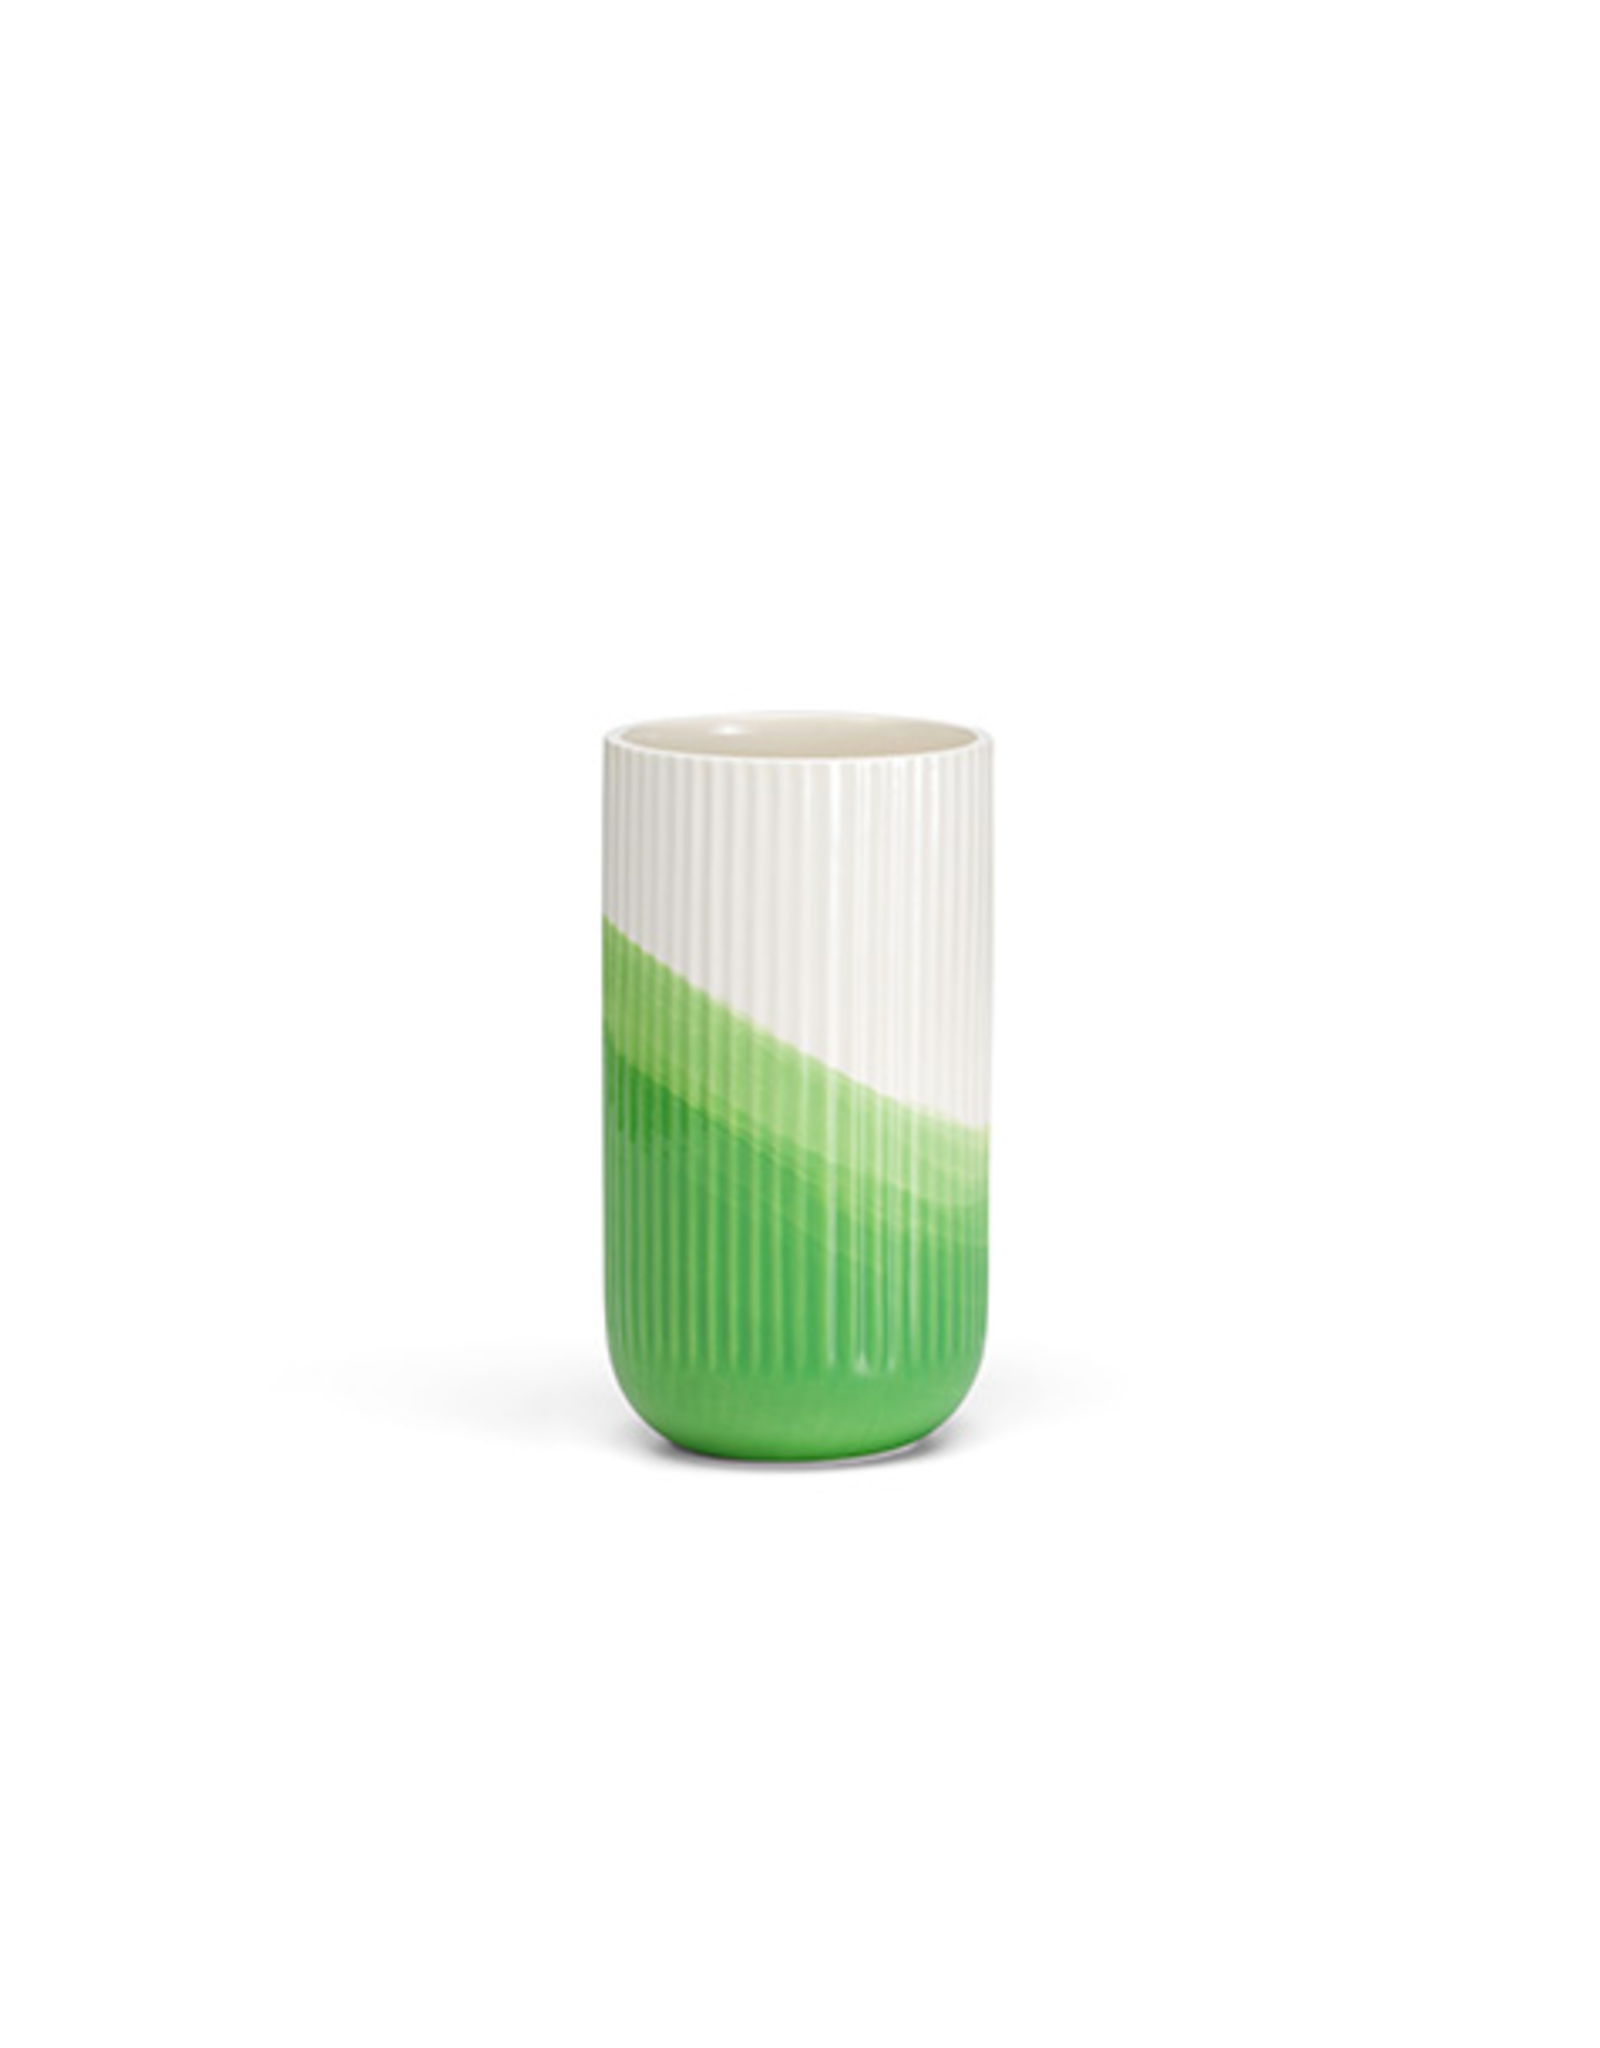 Vitra Green Ribbed Herringbone Vase